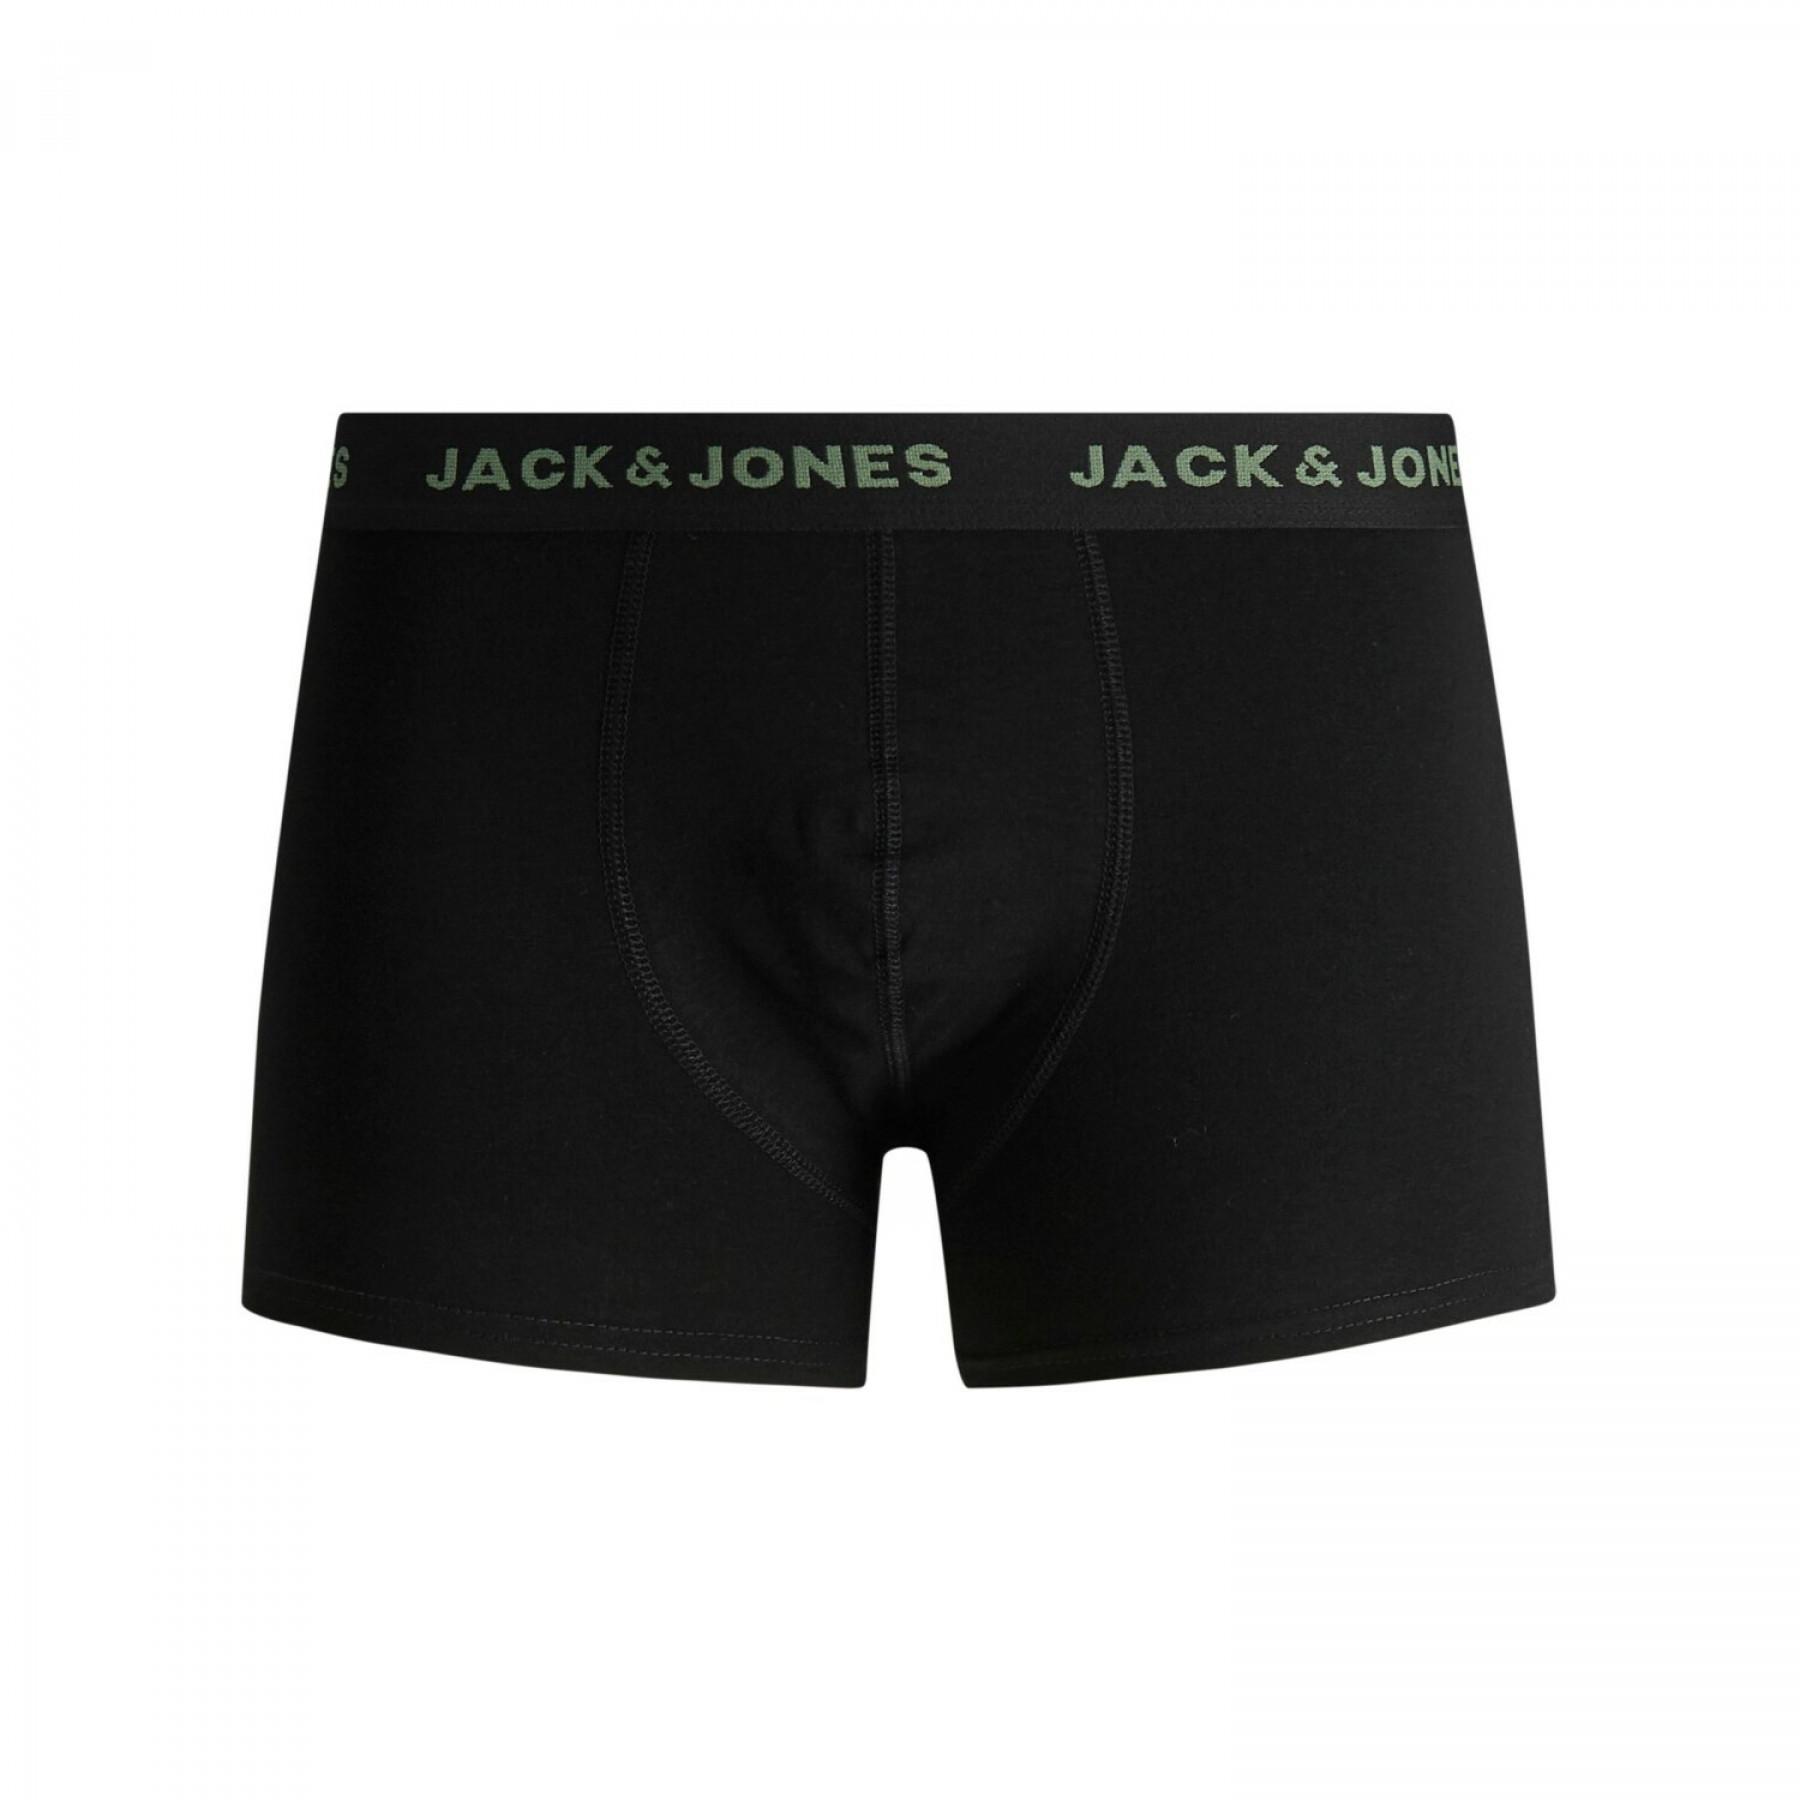 Förpackning med 7 boxershorts Jack & Jones Basic